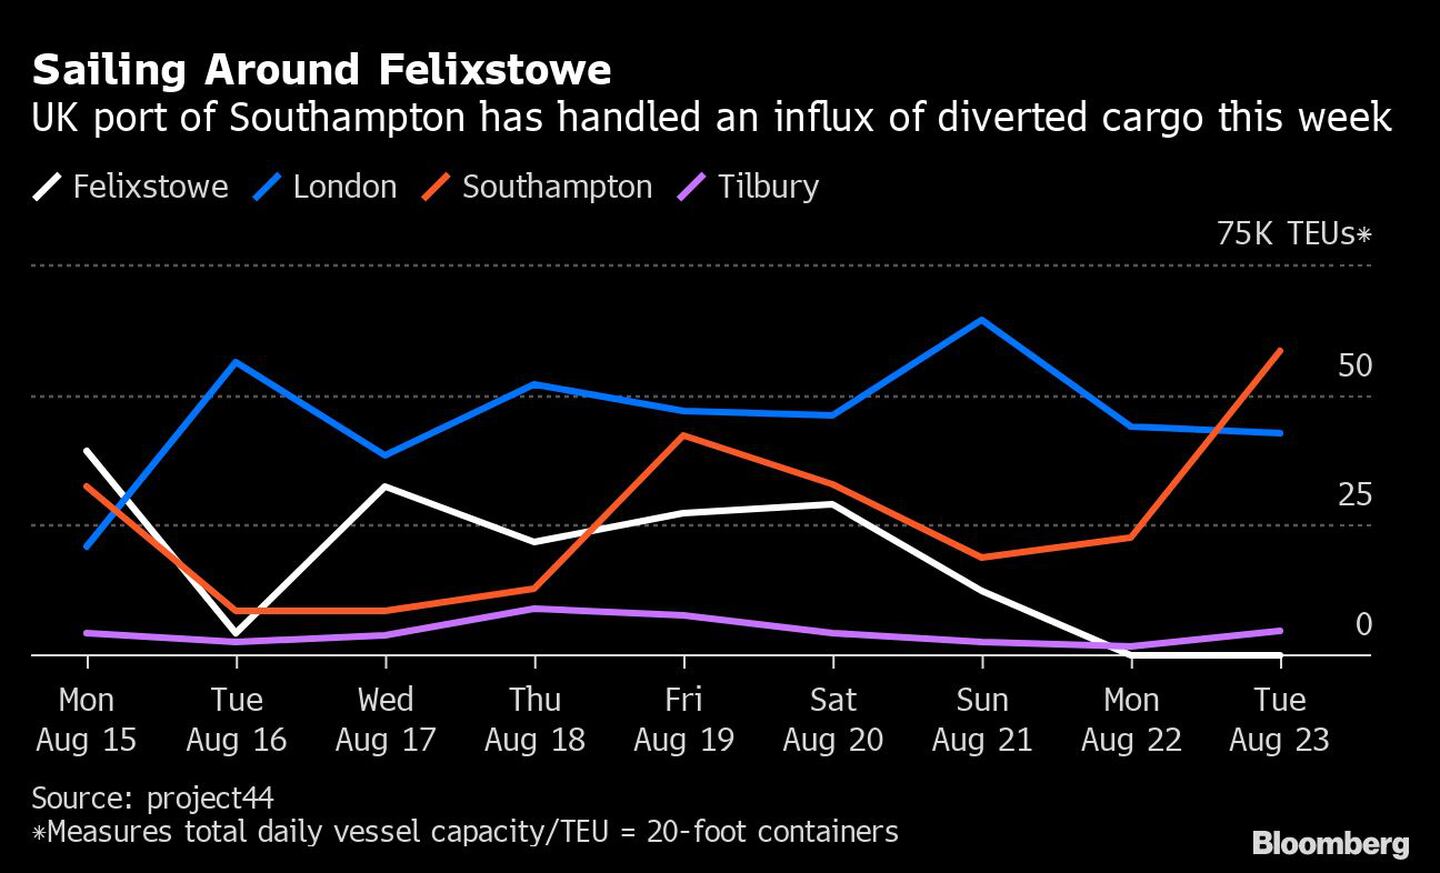 El puerto británico de Southampton ha visto un mayor flujo de carga desviada esta semanadfd